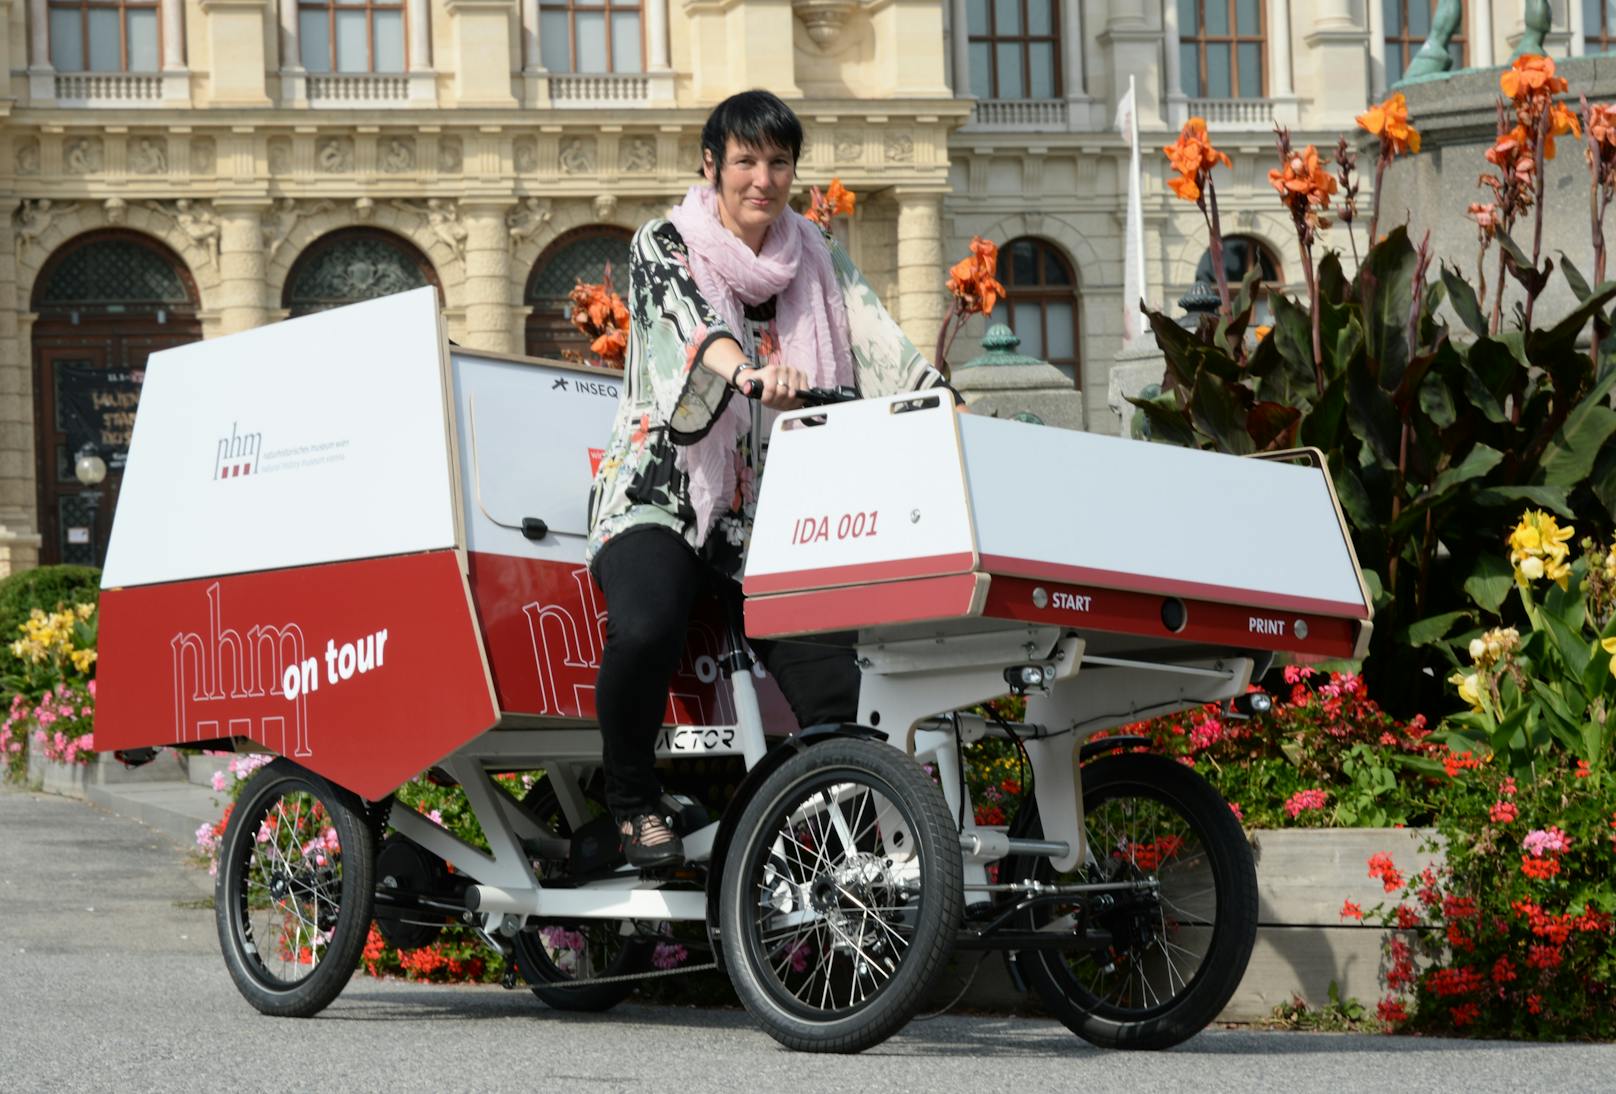 Generaldirektorin Dr. Katrin Vohland mit dem Fahrrad "NHM Wien on tour" am Maria-Theresien-Platz